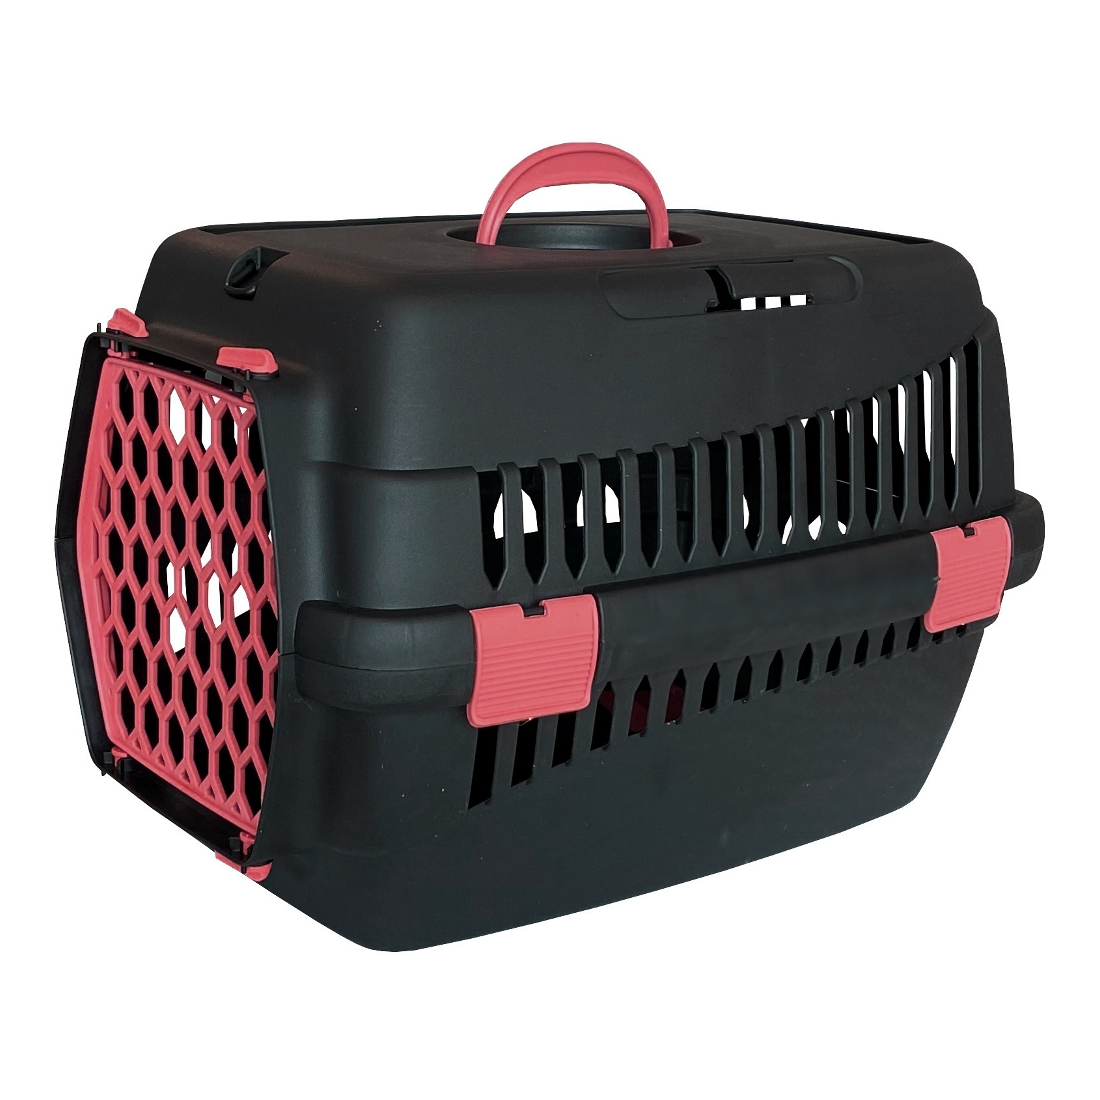 Lüx Kedi Köpek Taşıma Çantası 32 X 48 X 32 cm Kırmızı-Siyah